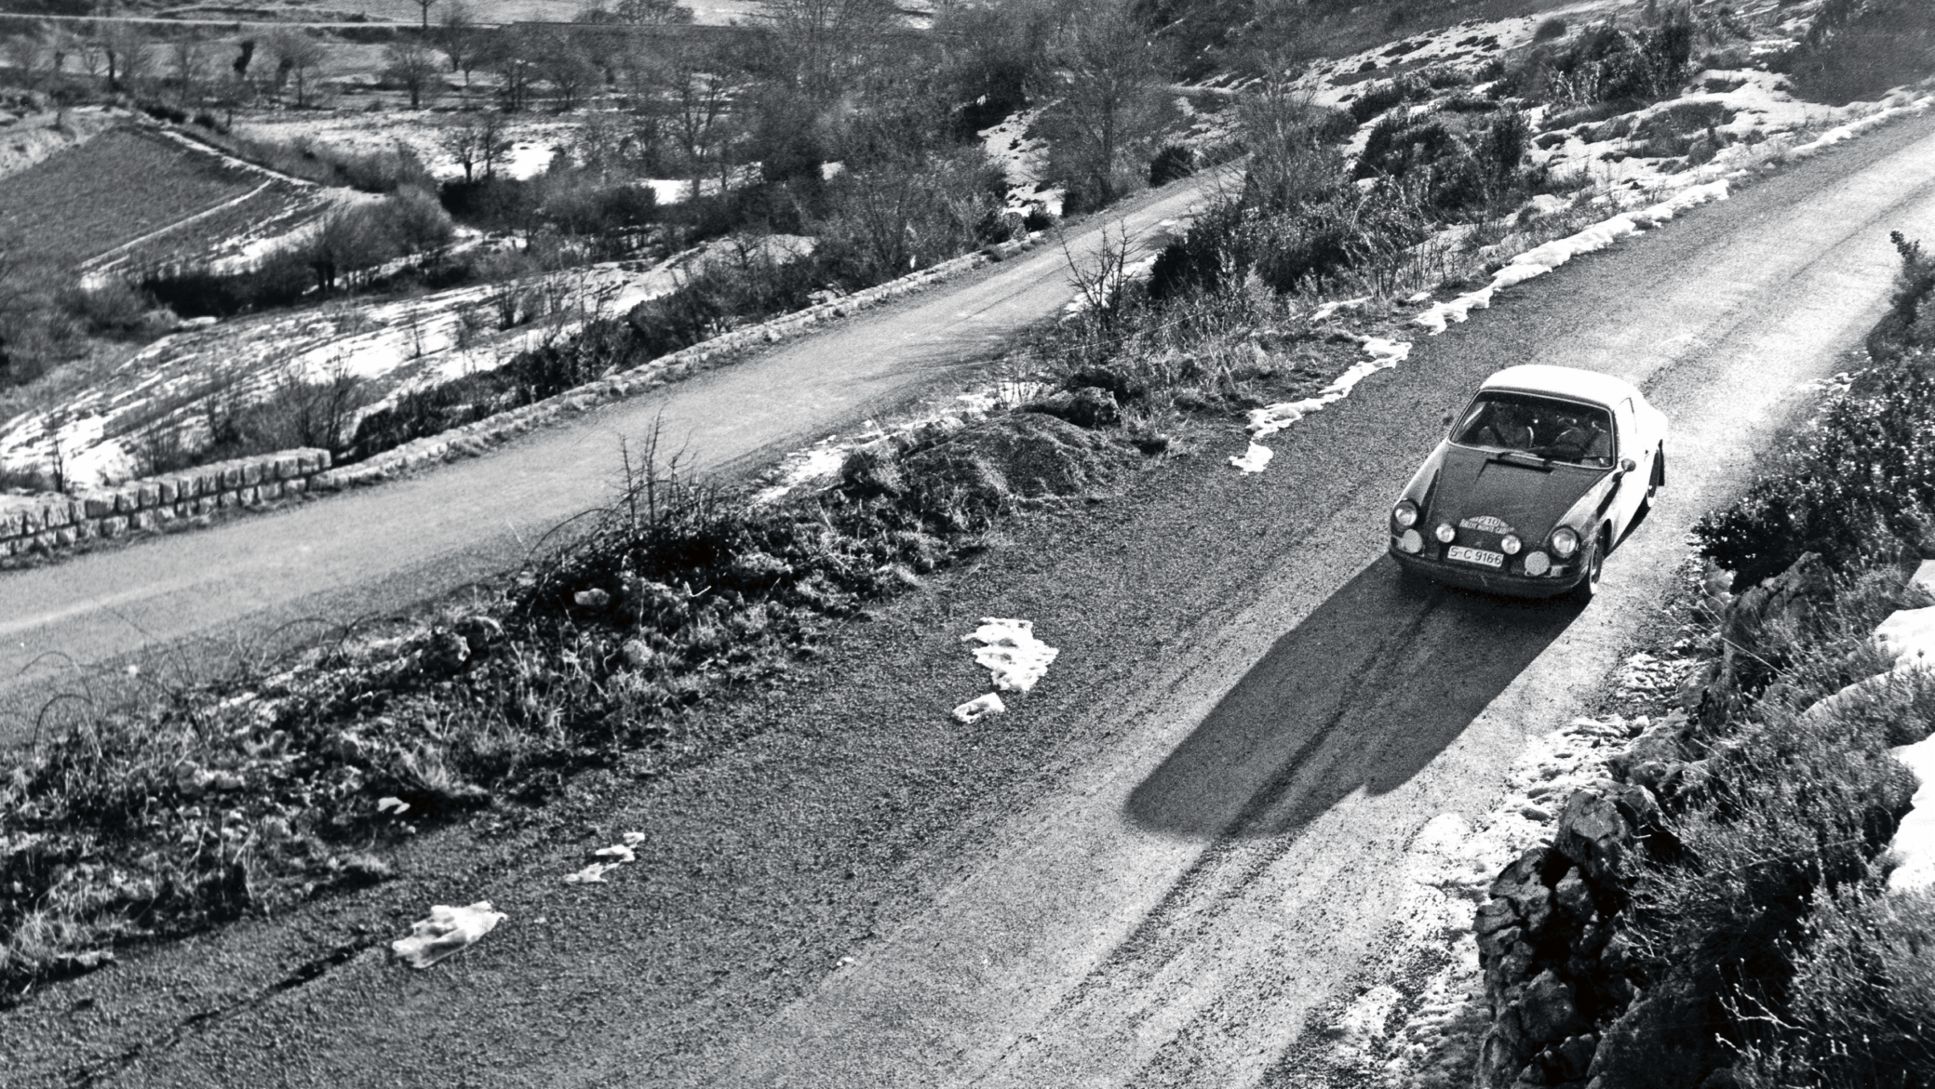 911 T, 37. Monte Carlo Rally, 1968, Porsche AG